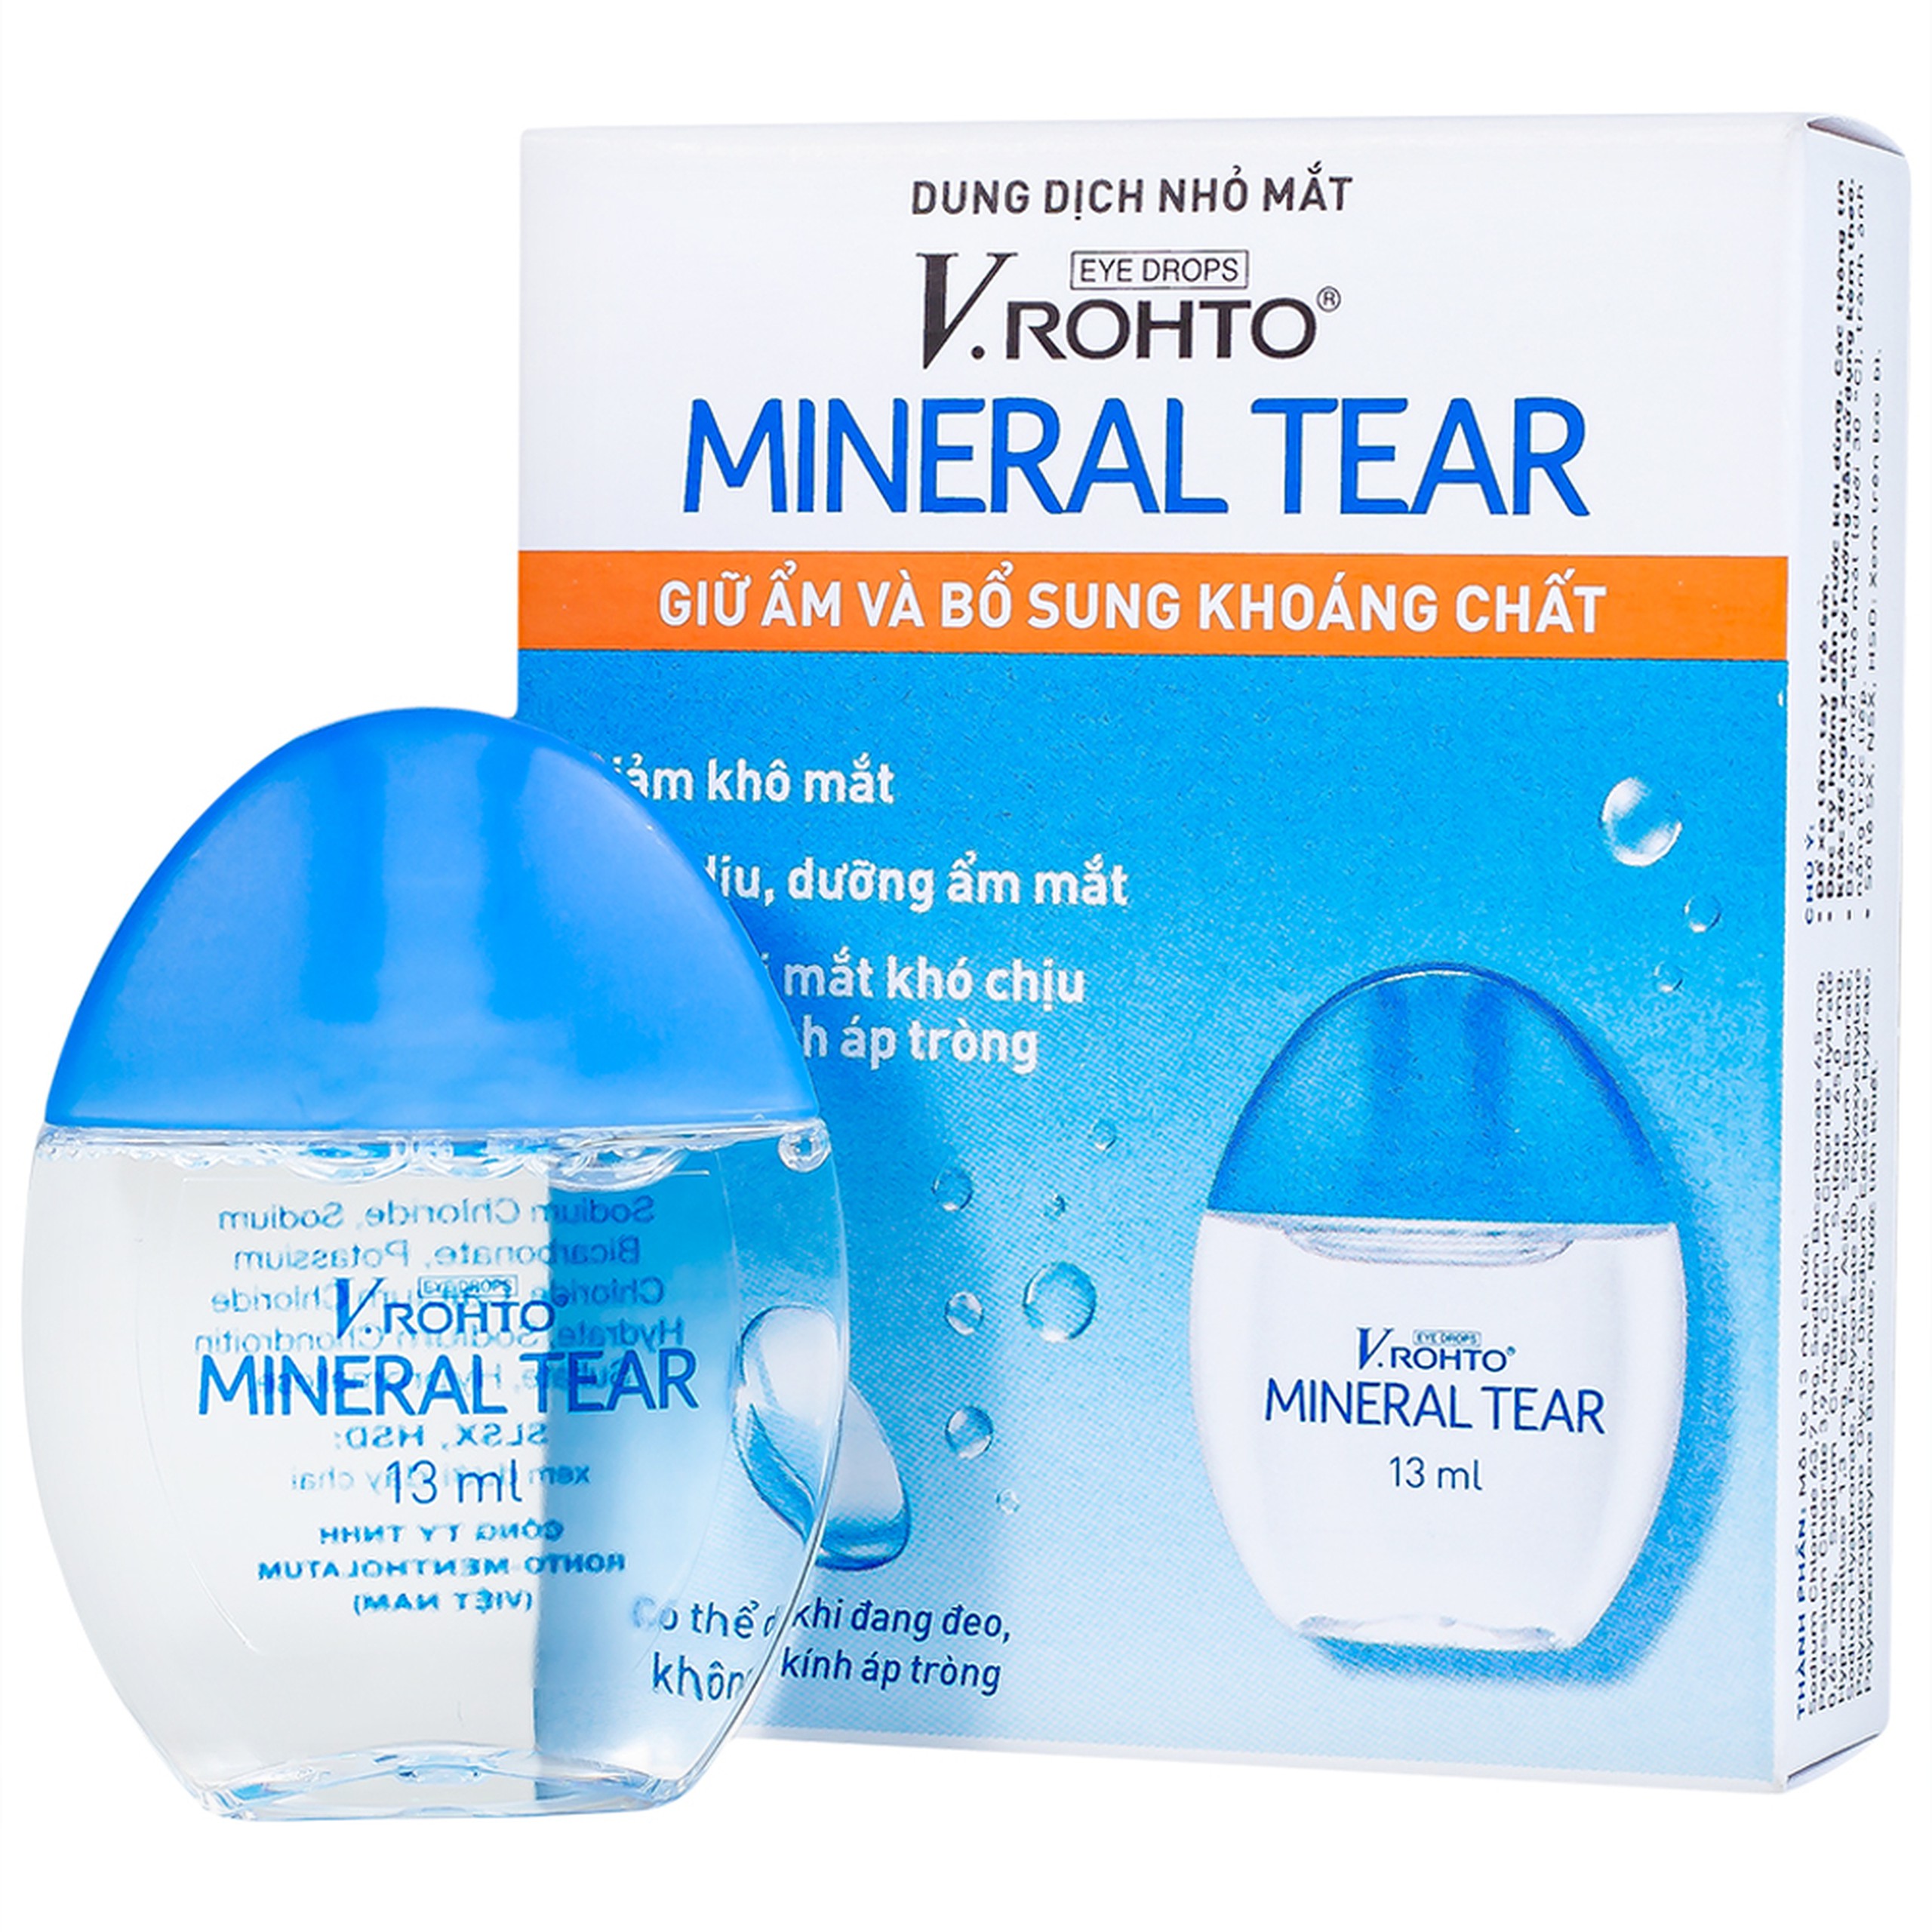 Dung dịch nhỏ mắt V.Rohto Mineral Tear giữ ẩm và bổ sung khoáng chất (13ml)